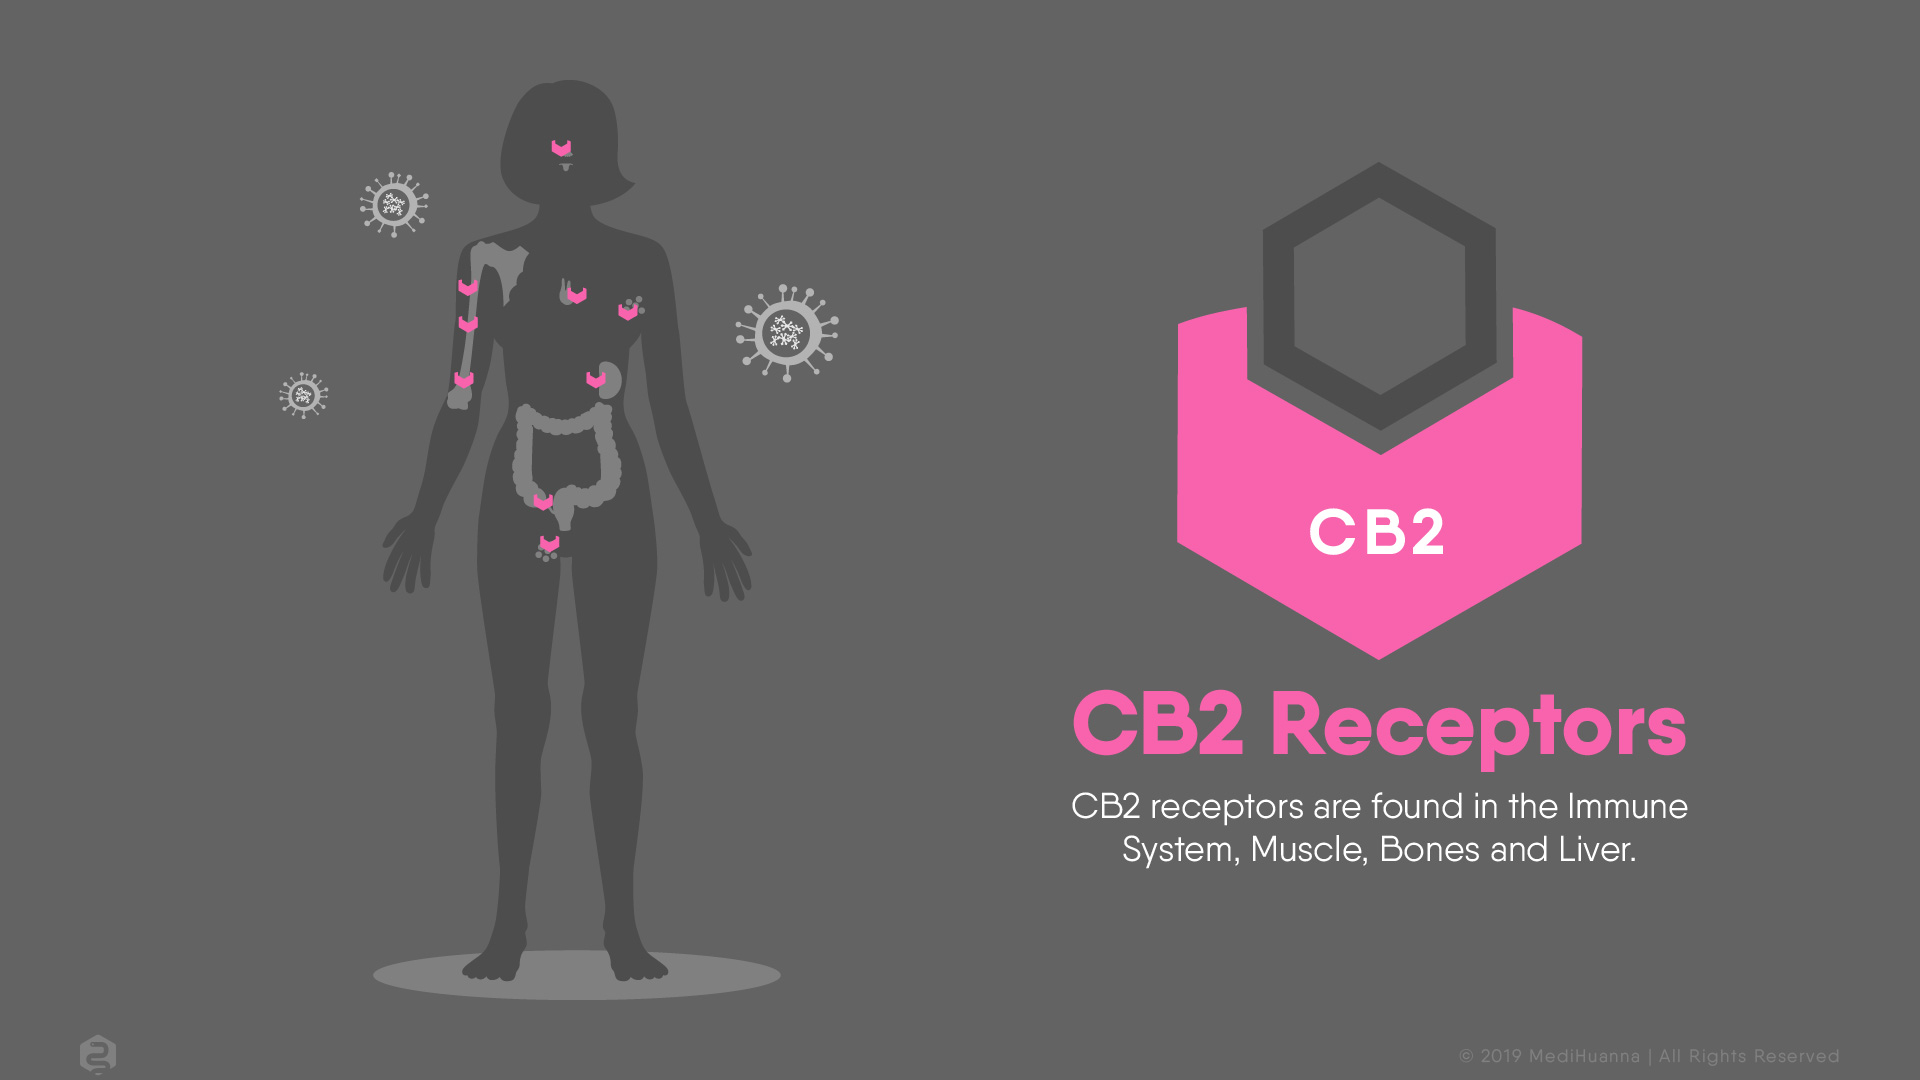 CB2 receptors